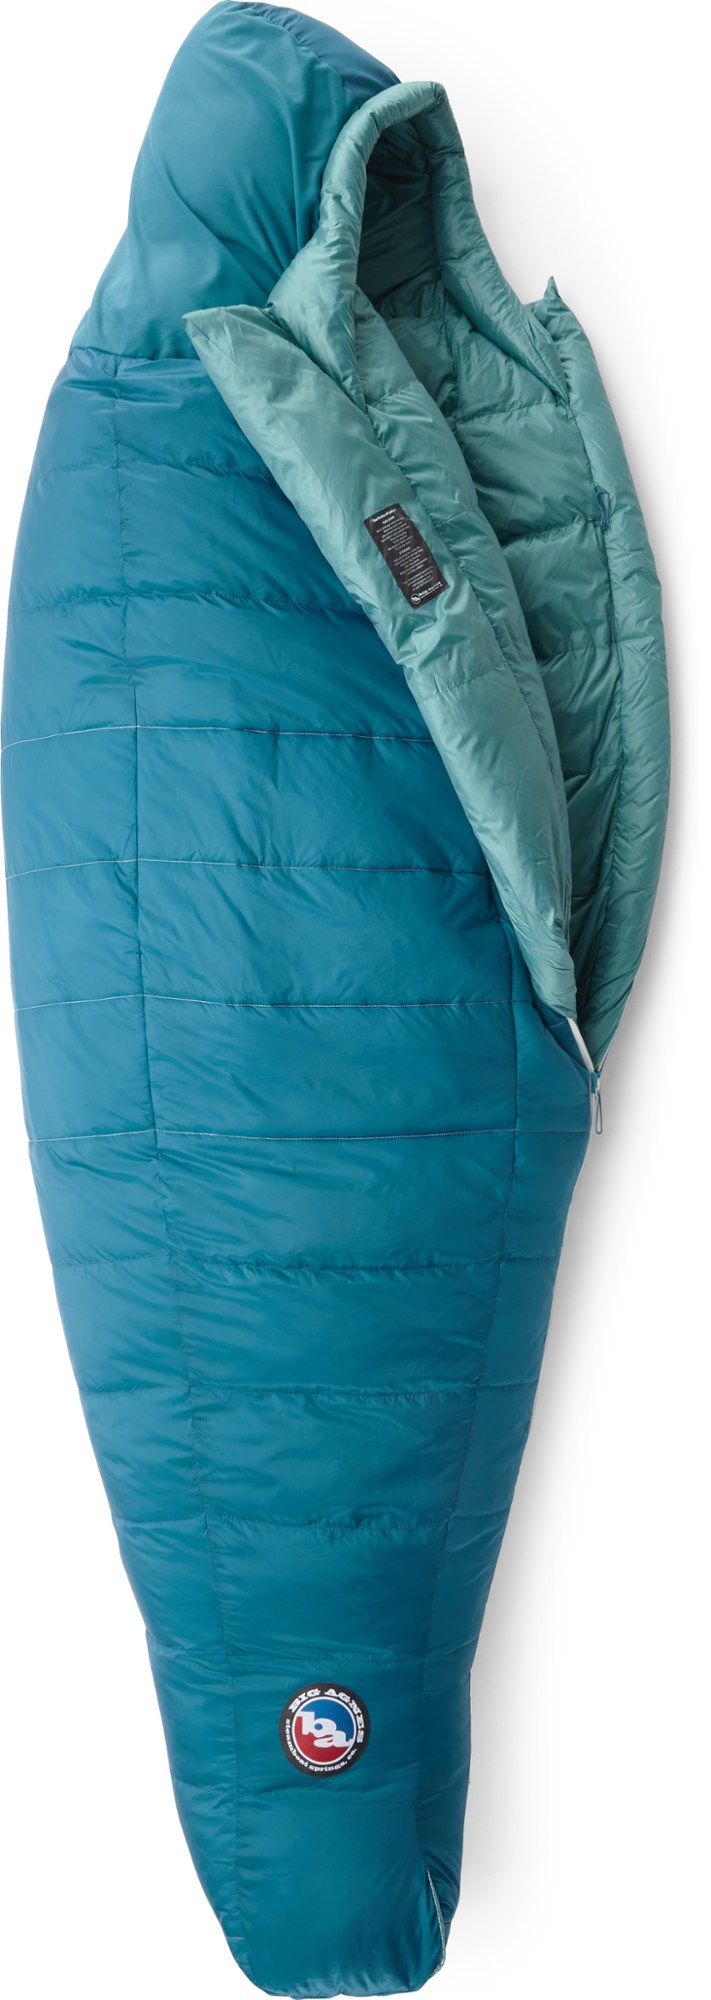 Спальный мешок Sidewinder SL 20 — женский Big Agnes, синий